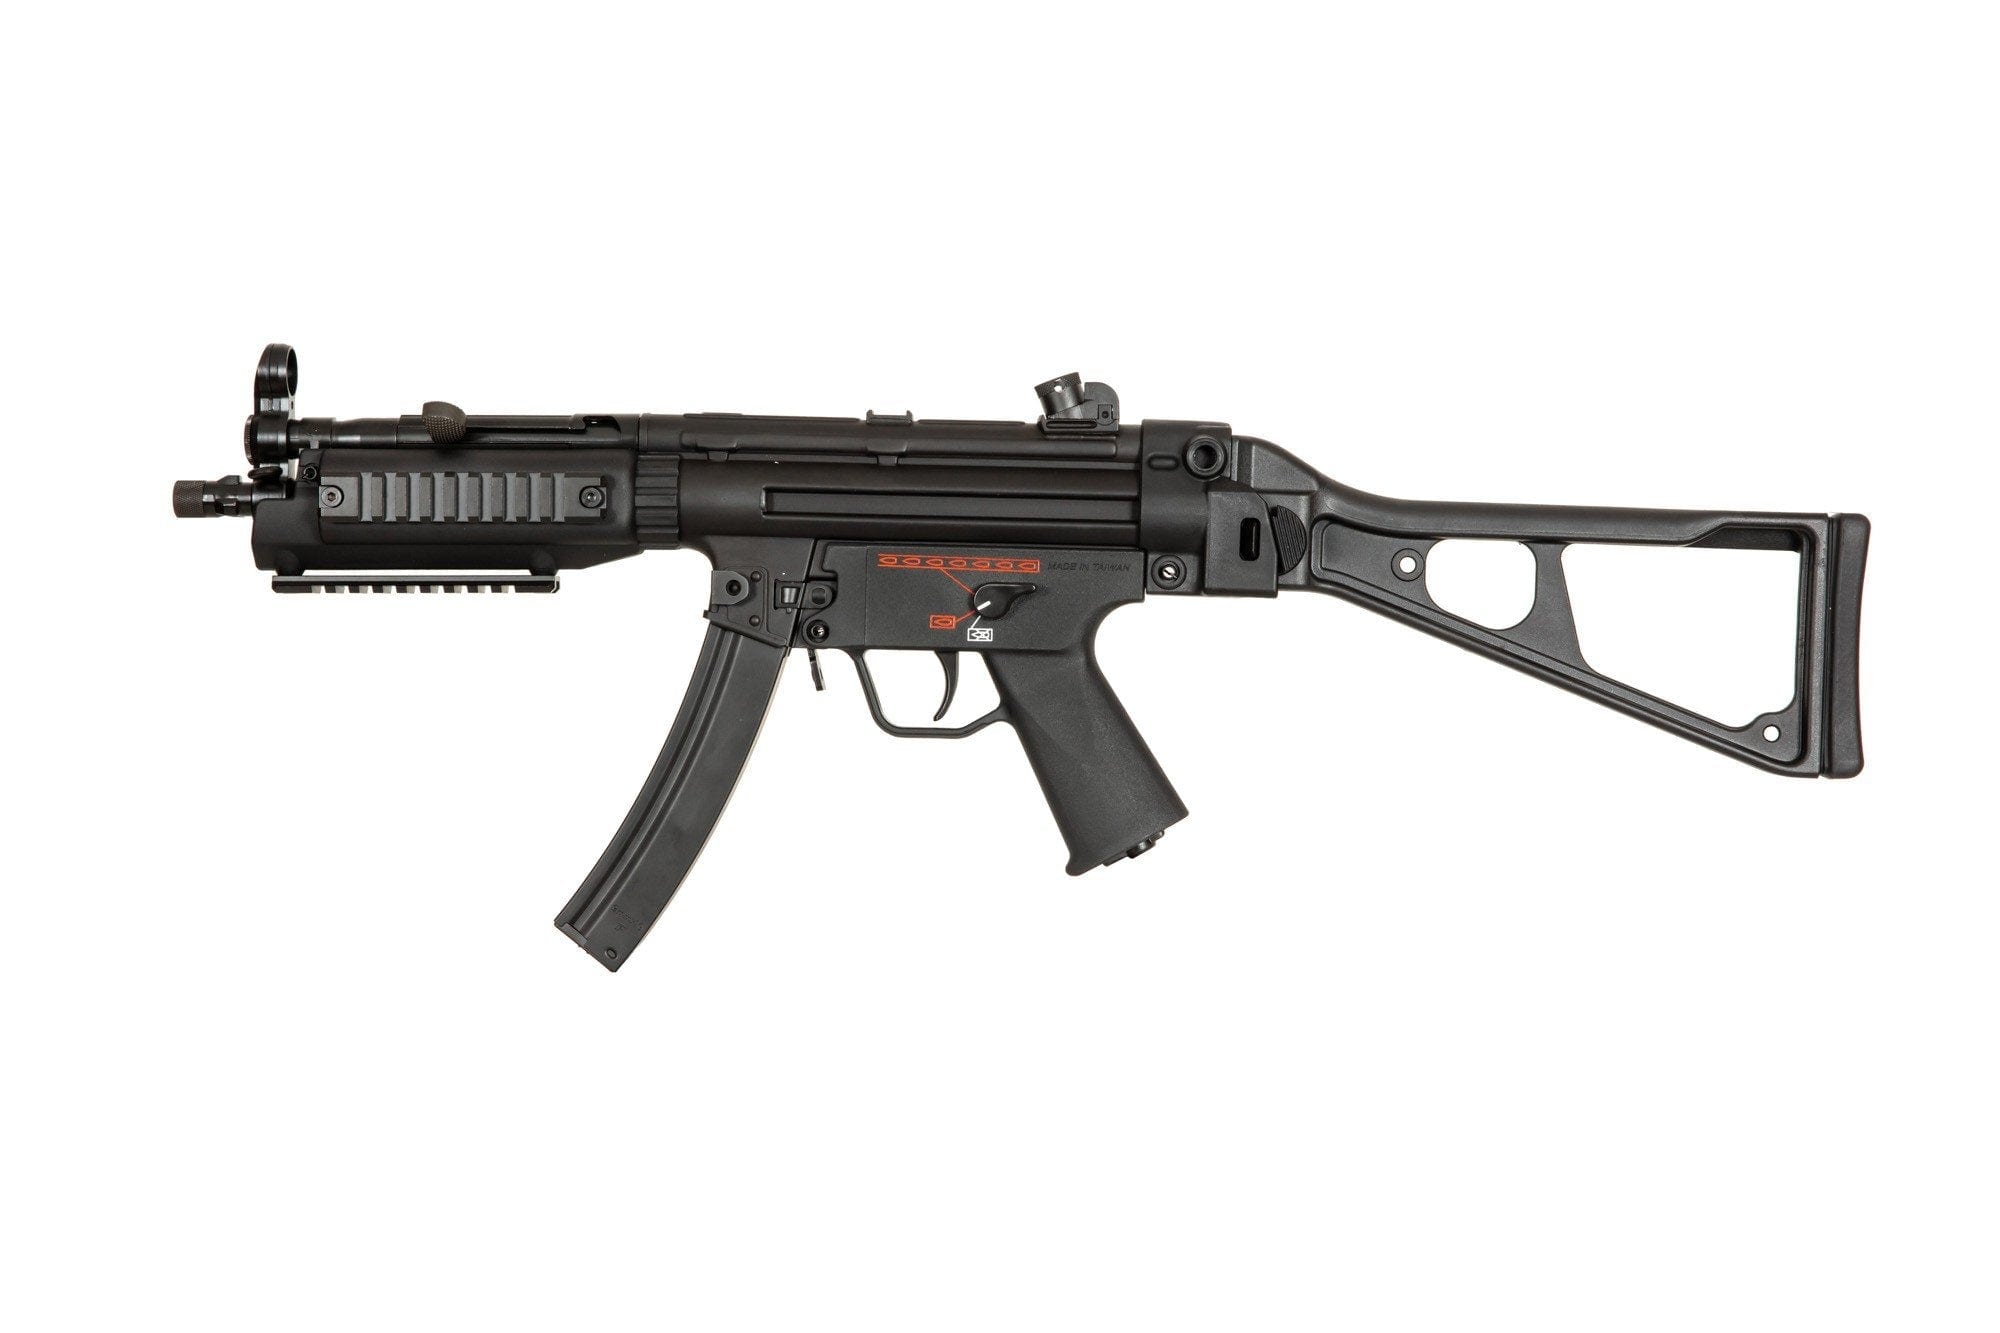 TGM A3 ETU PDW Submachine Gun Replica